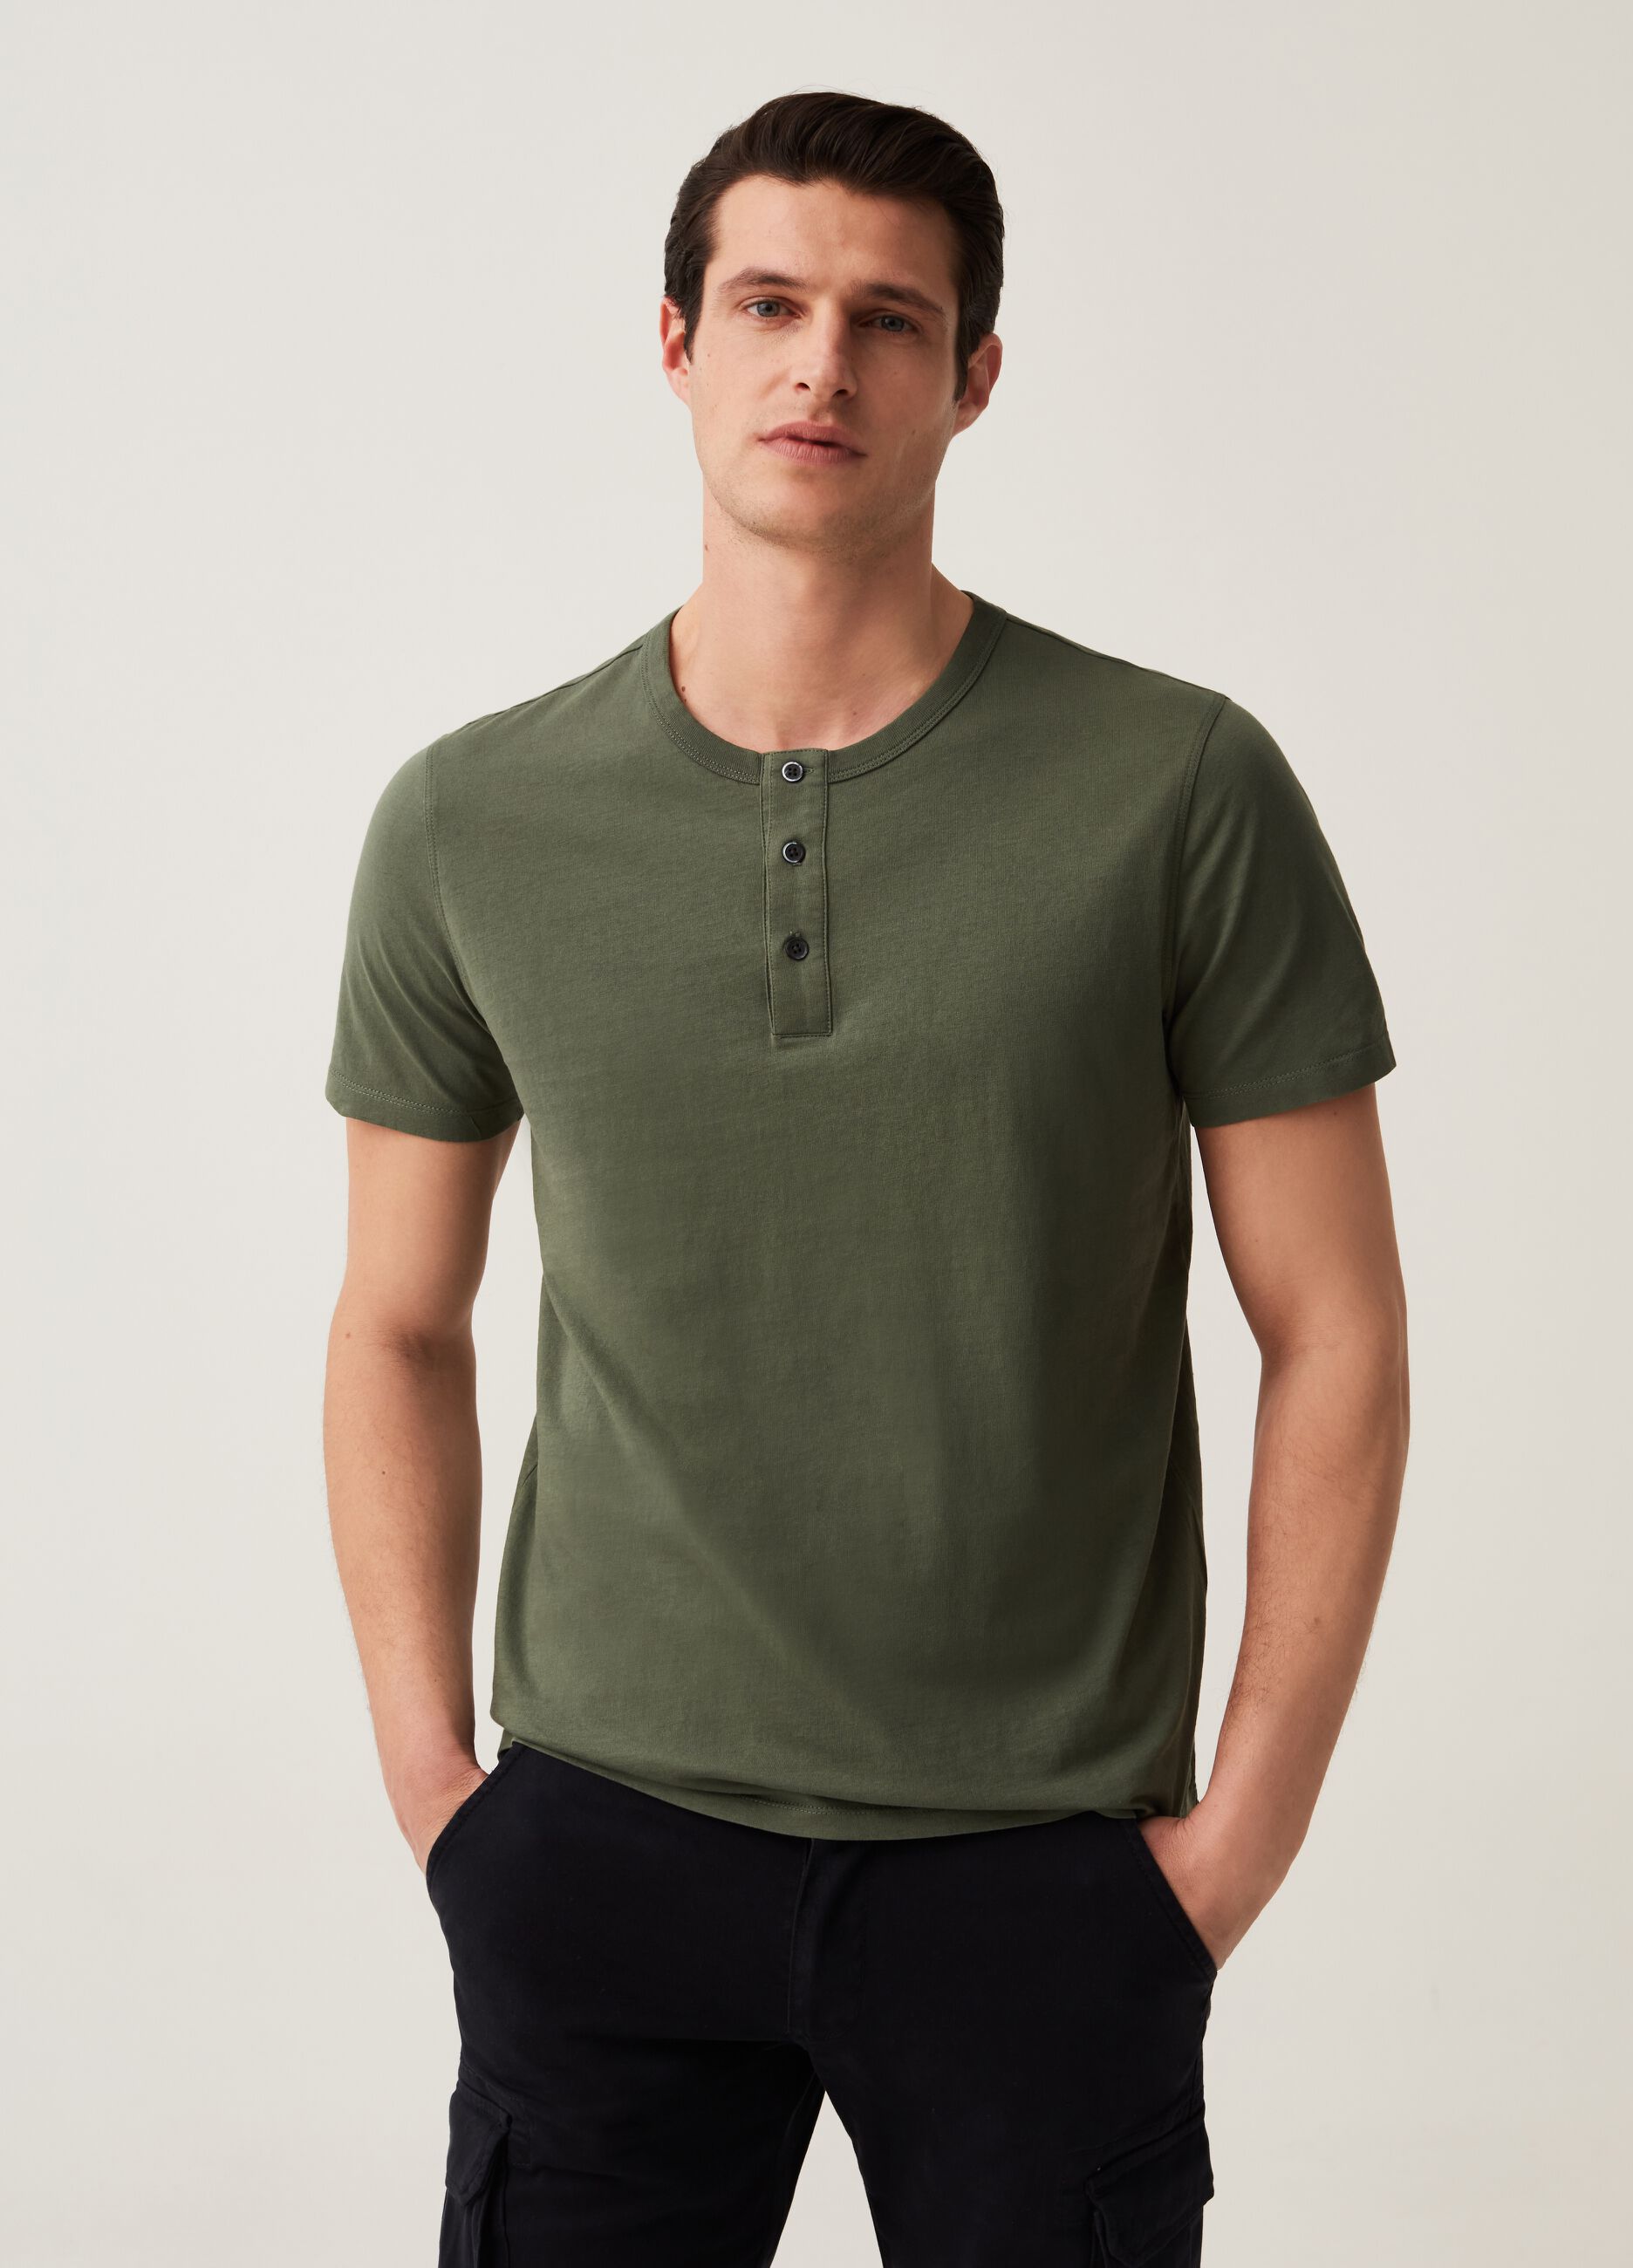 Premium cotton T-shirt with granddad neckline